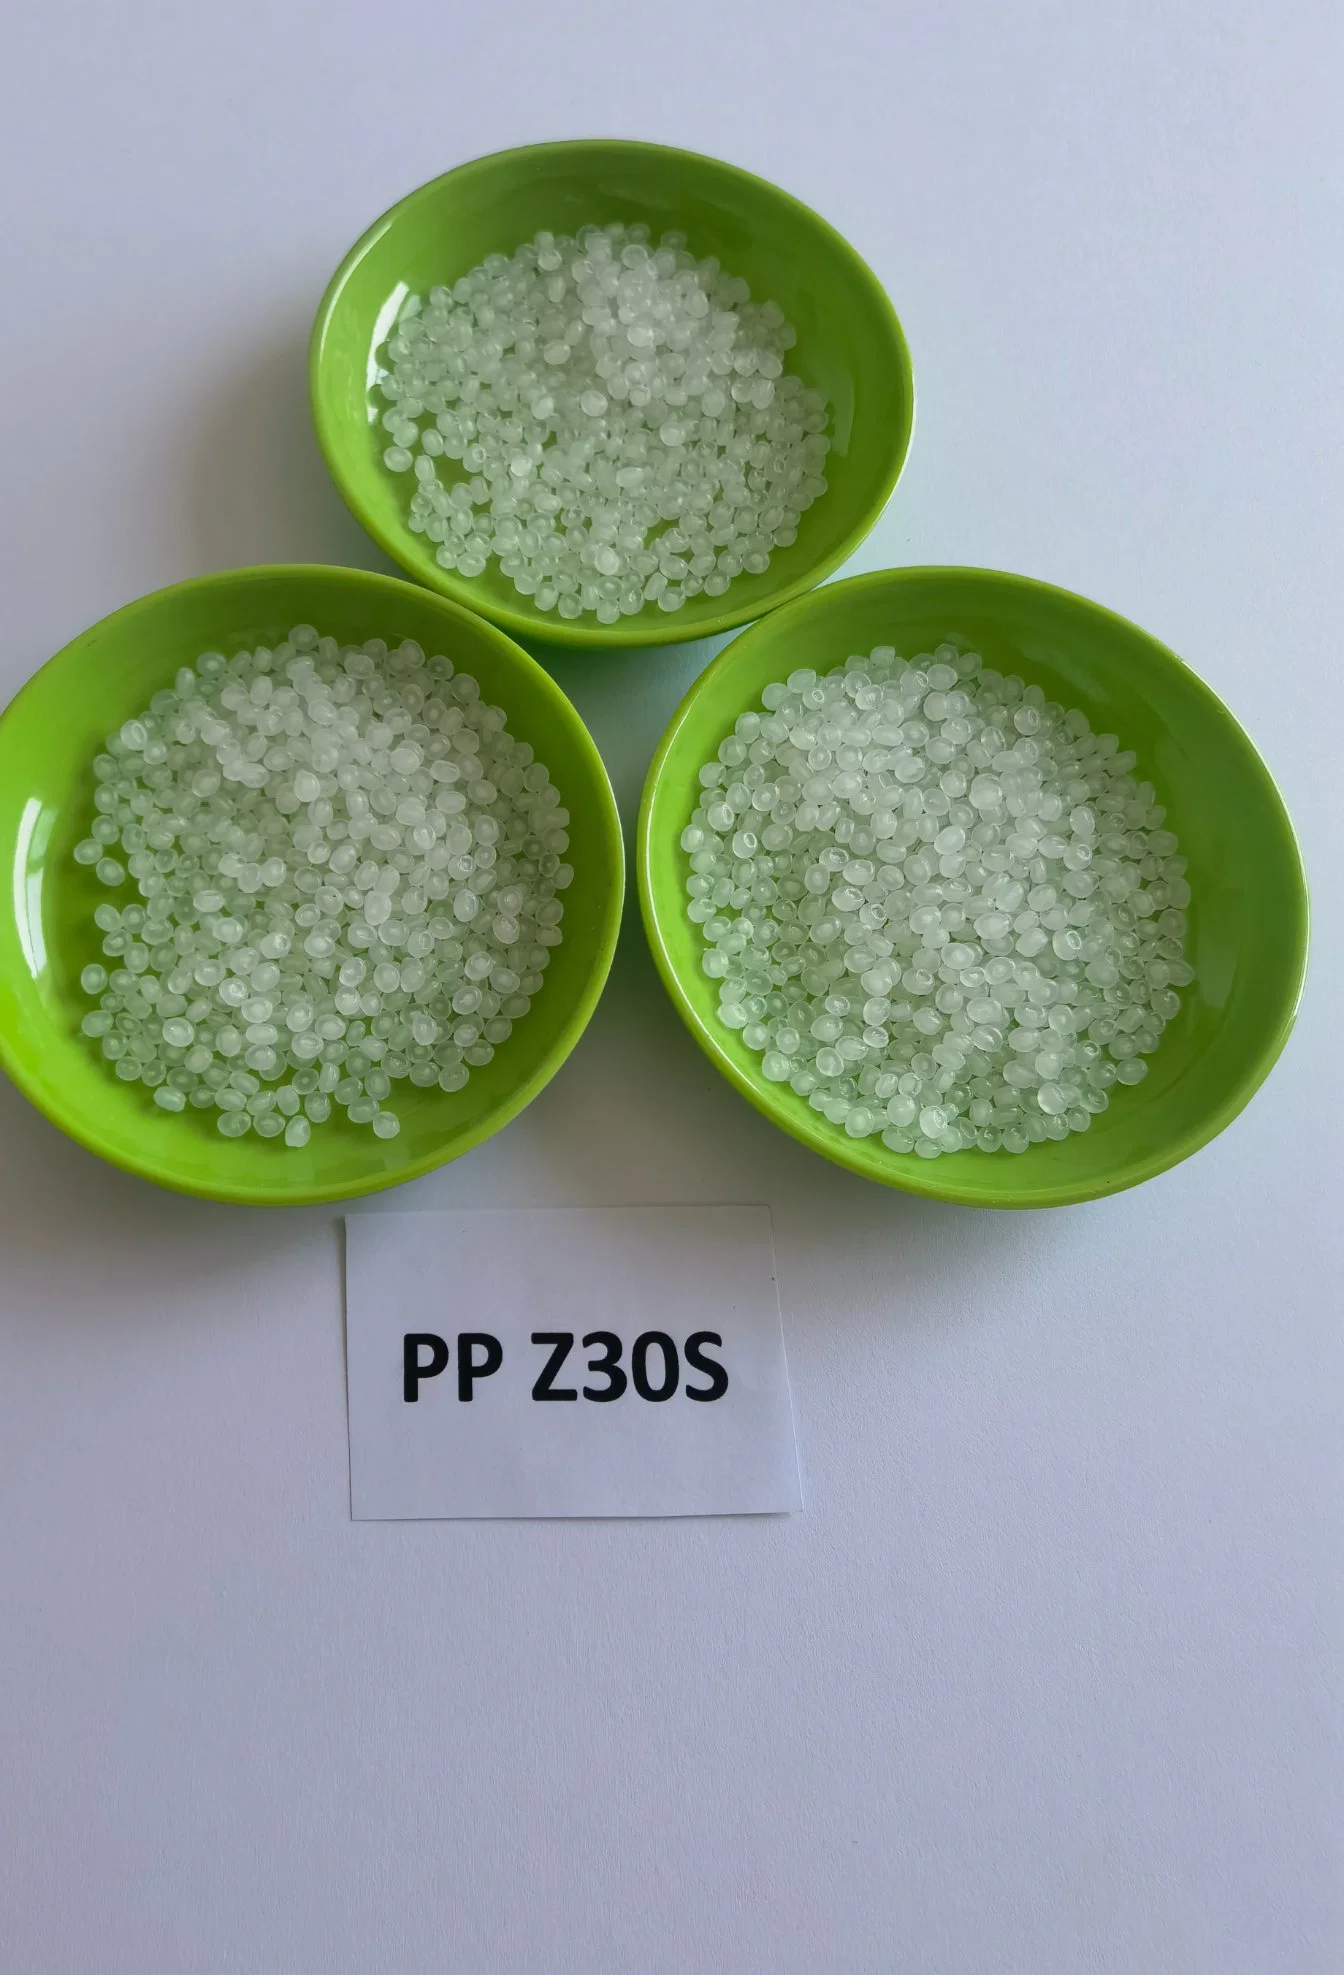 Granulés de PP vierge résine polypropylène Pellets en PP recyclé pour la fabrication Sacs tissés